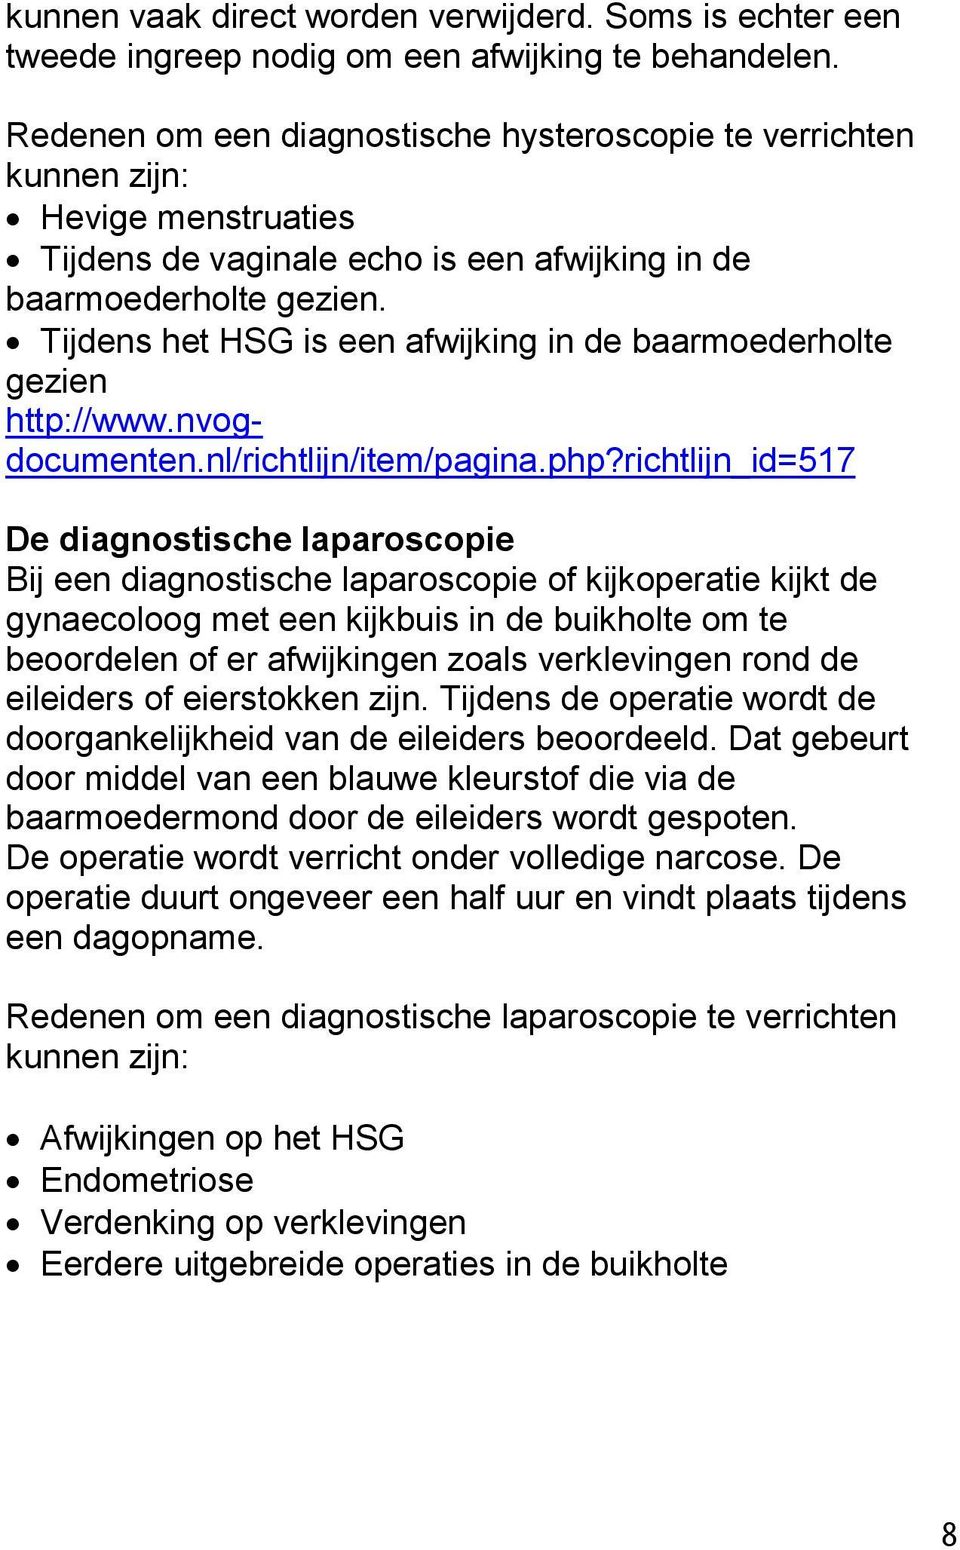 Tijdens het HSG is een afwijking in de baarmoederholte gezien http://www.nvogdocumenten.nl/richtlijn/item/pagina.php?